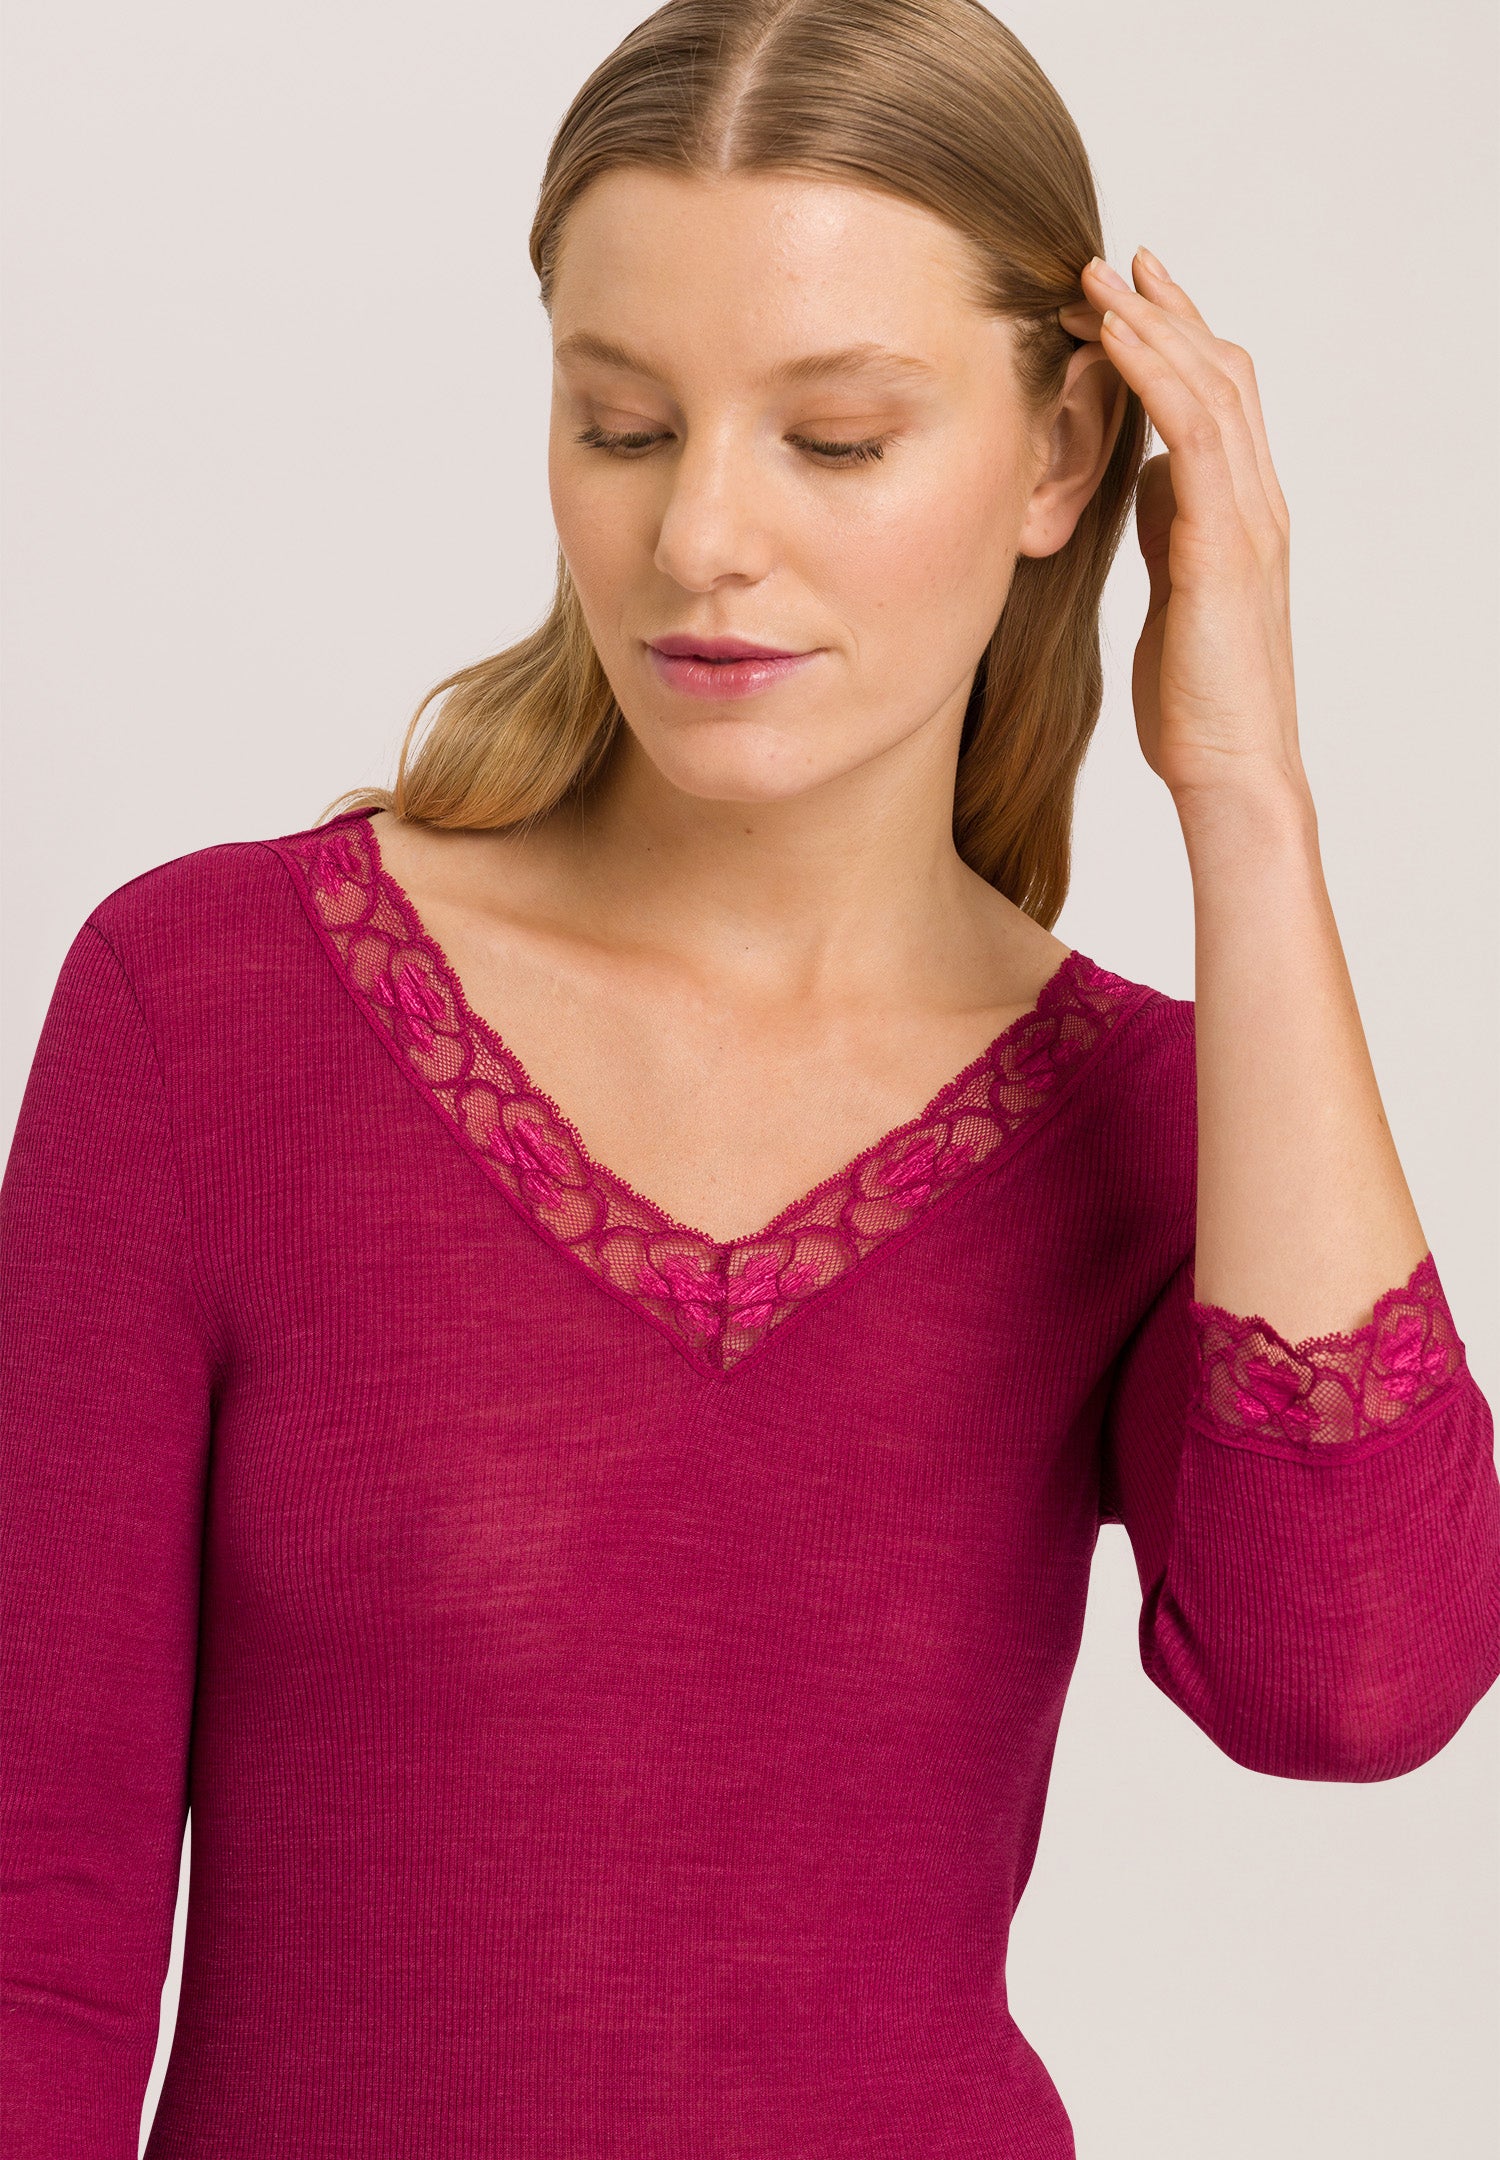 70973 Woolen Lace 3/4 Sleeve Shirt - 2406 Intense Garnet